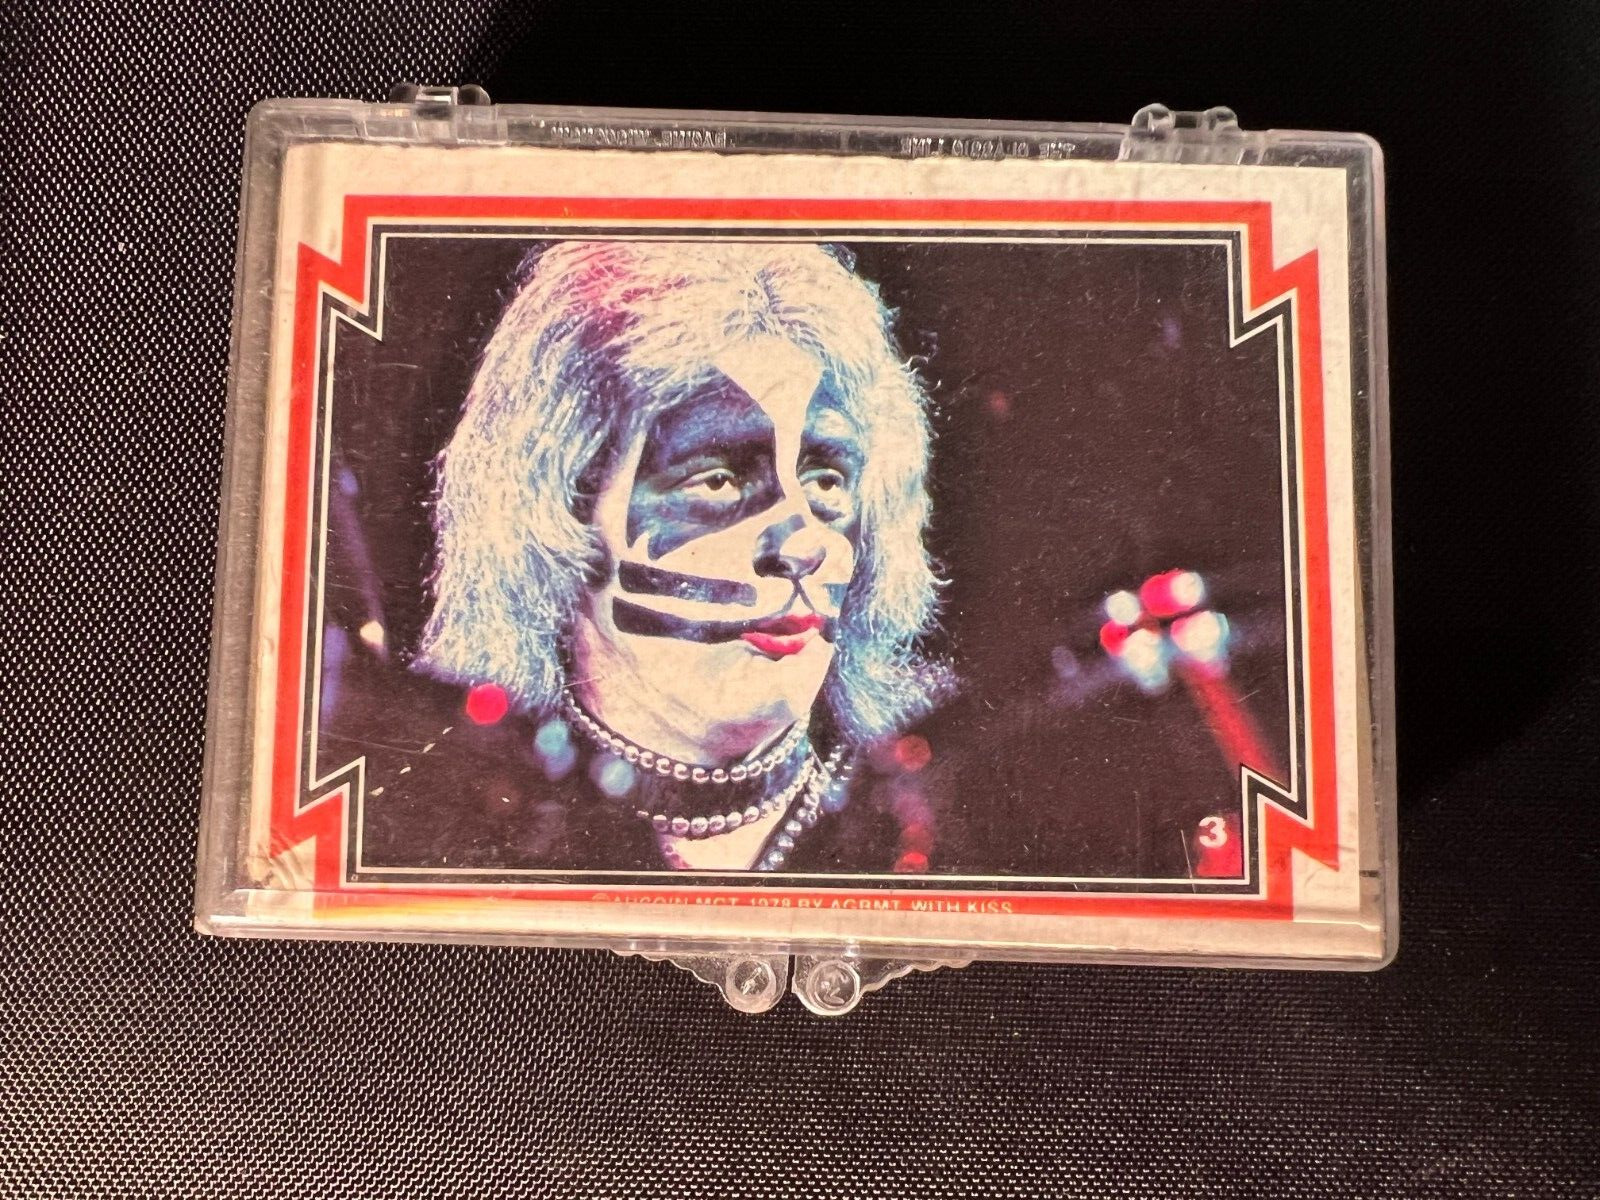 1978 DONRUSS KISS SERIES 1 INCOMPLETE SET LOT OF 45 CARDS VINTAGE AUCION